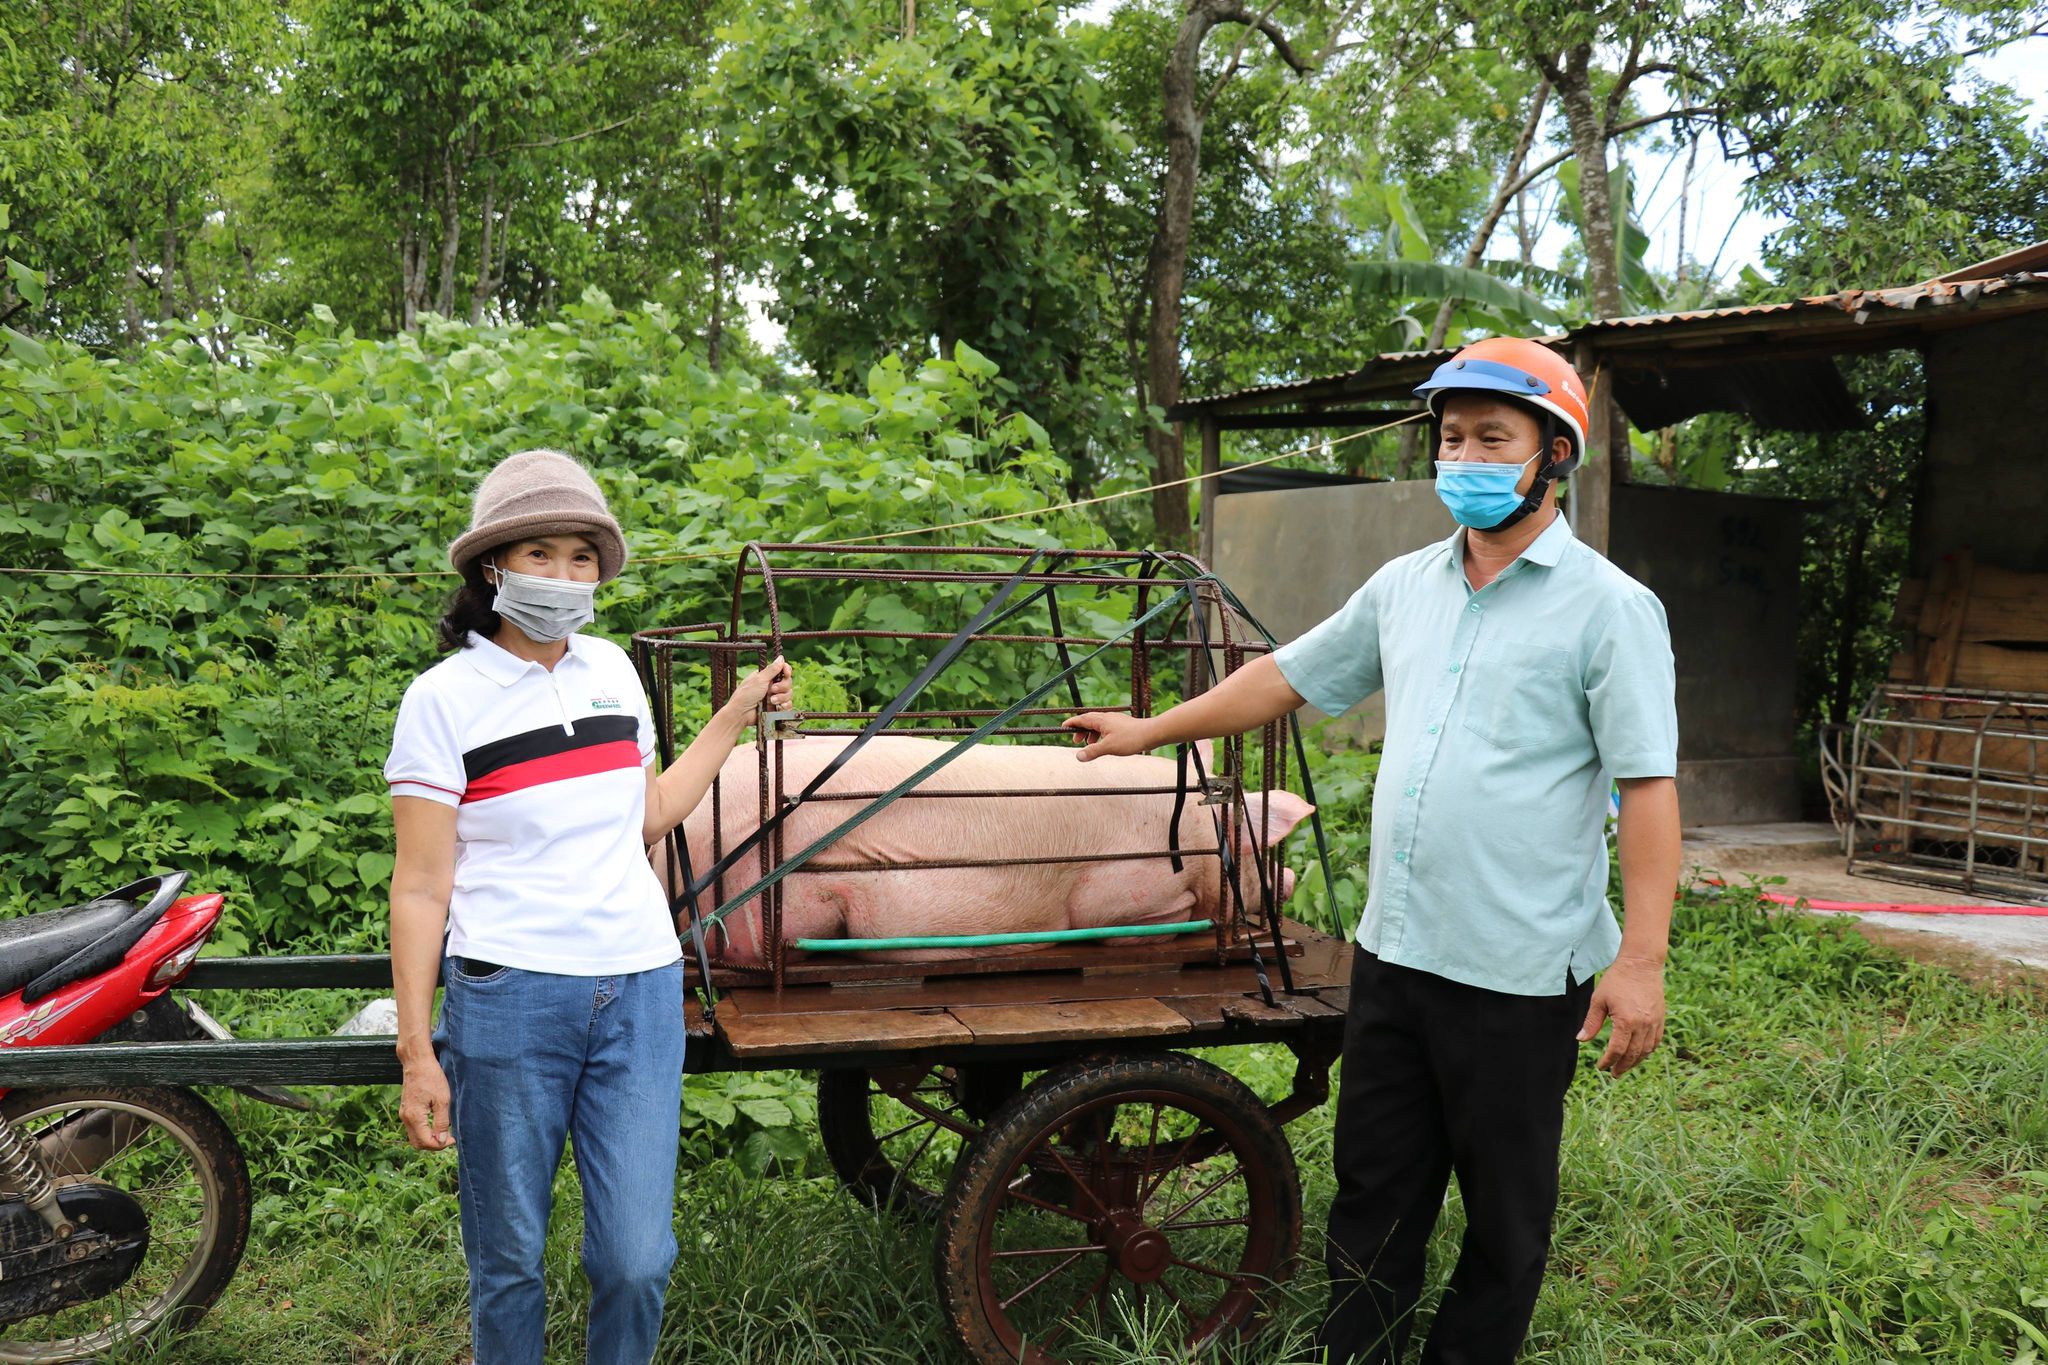 Phỏng vấn người phụ nữ Quảng Trị ủng hộ con lợn 120kg làm muối ủng hộ TP.HCM - ảnh 1